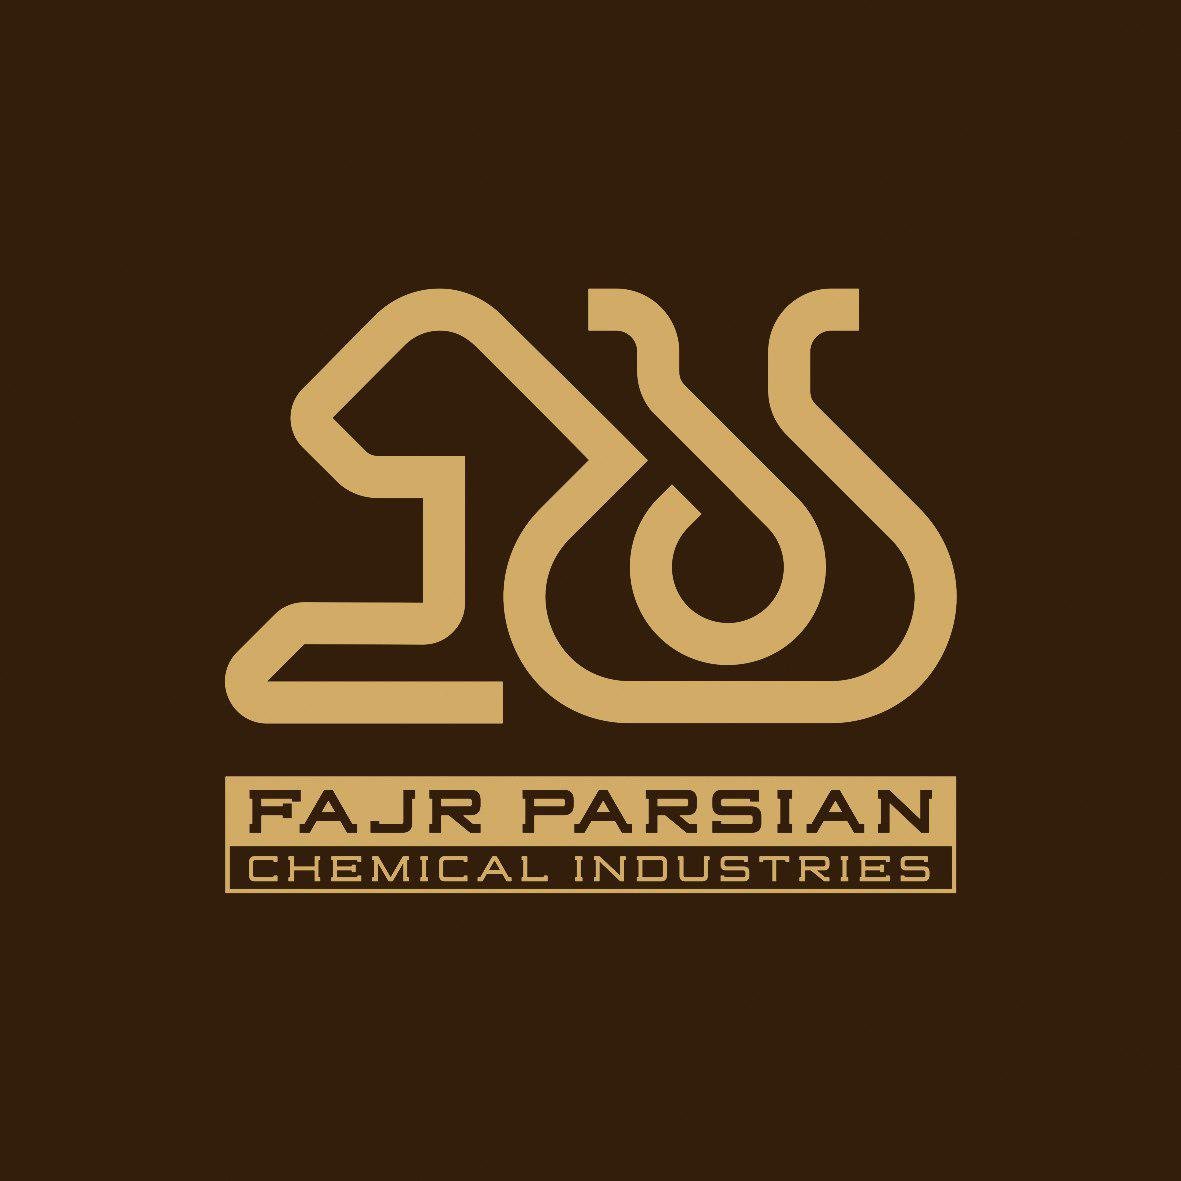 مدیر فروش | Sales Manager - شرکت فجر پارسیان | Fajr parsian